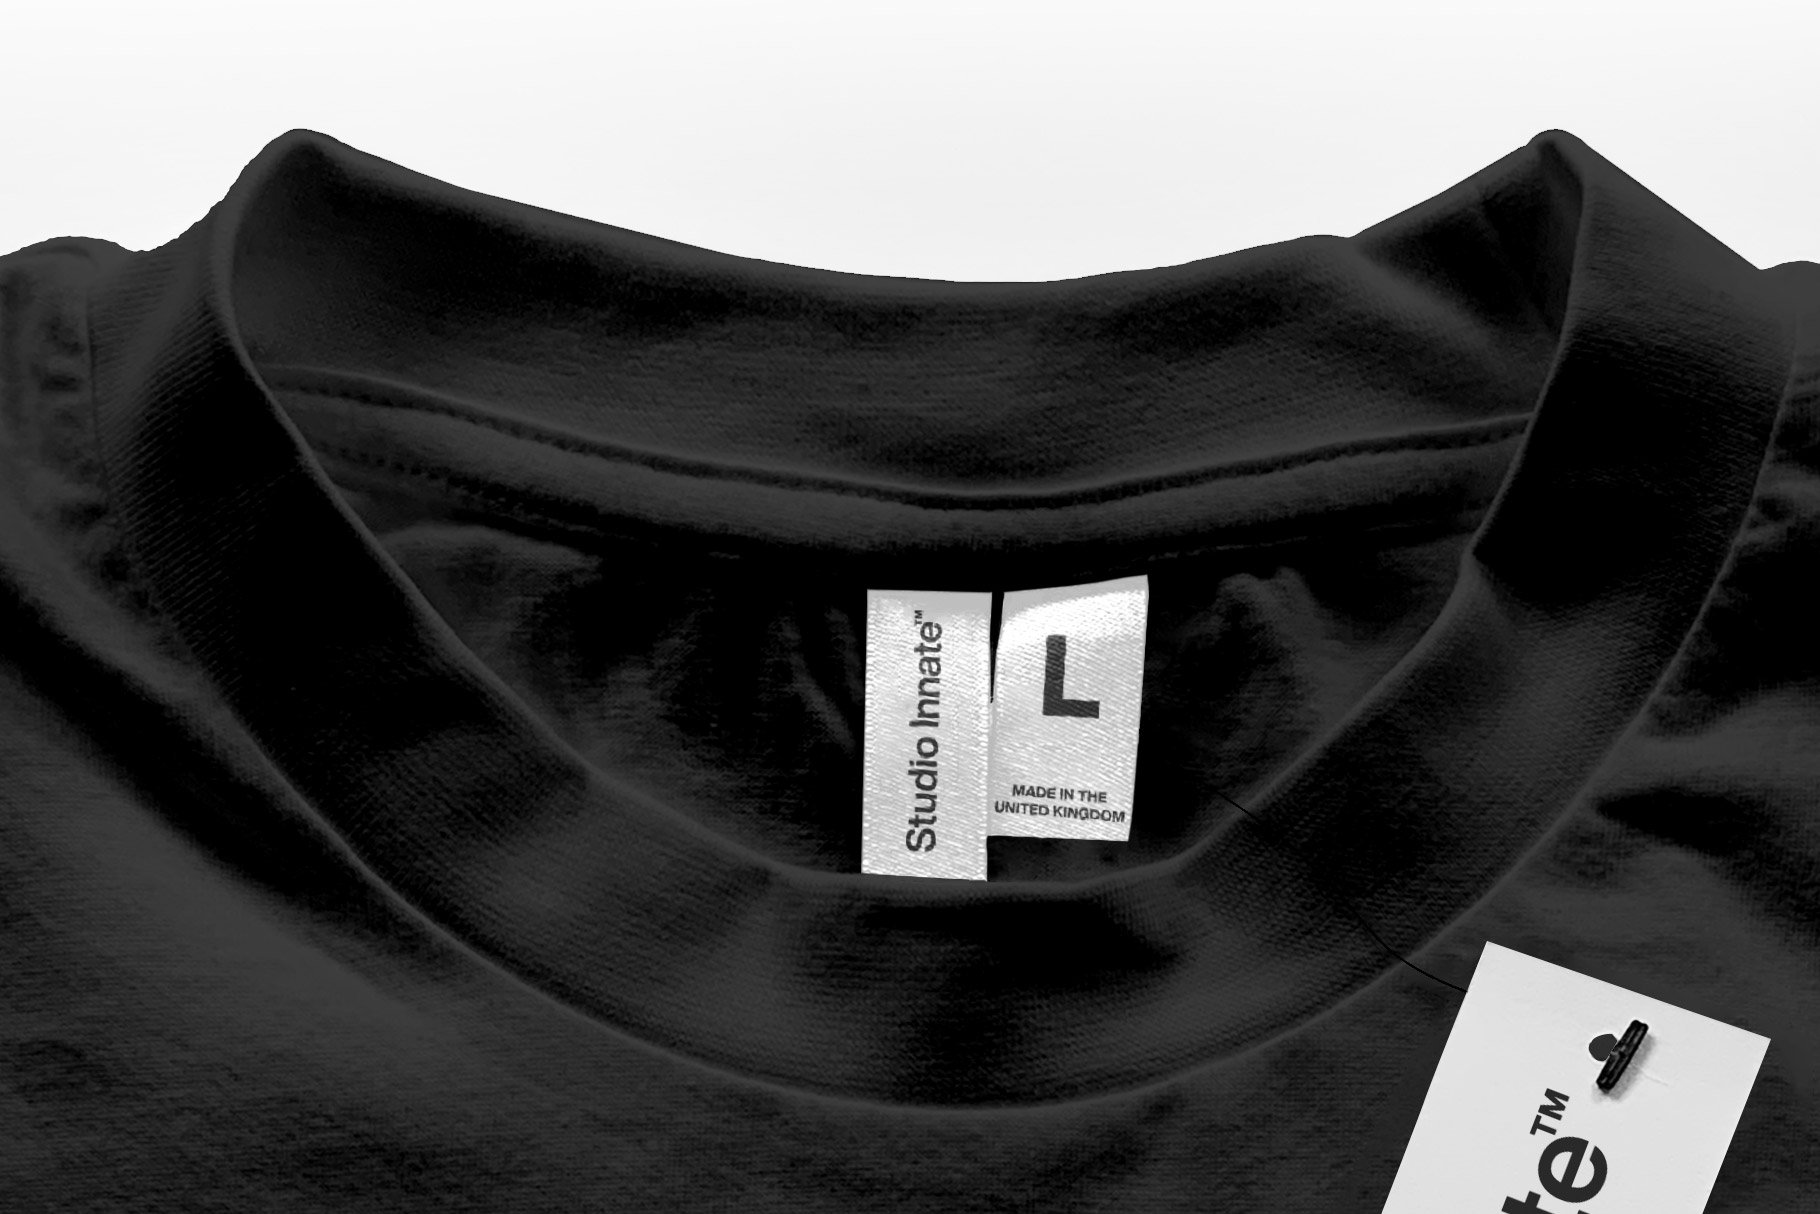 144 透明塑料包装袋服装吊牌设计贴图样机模板 Plastic Packed Garment Mockup